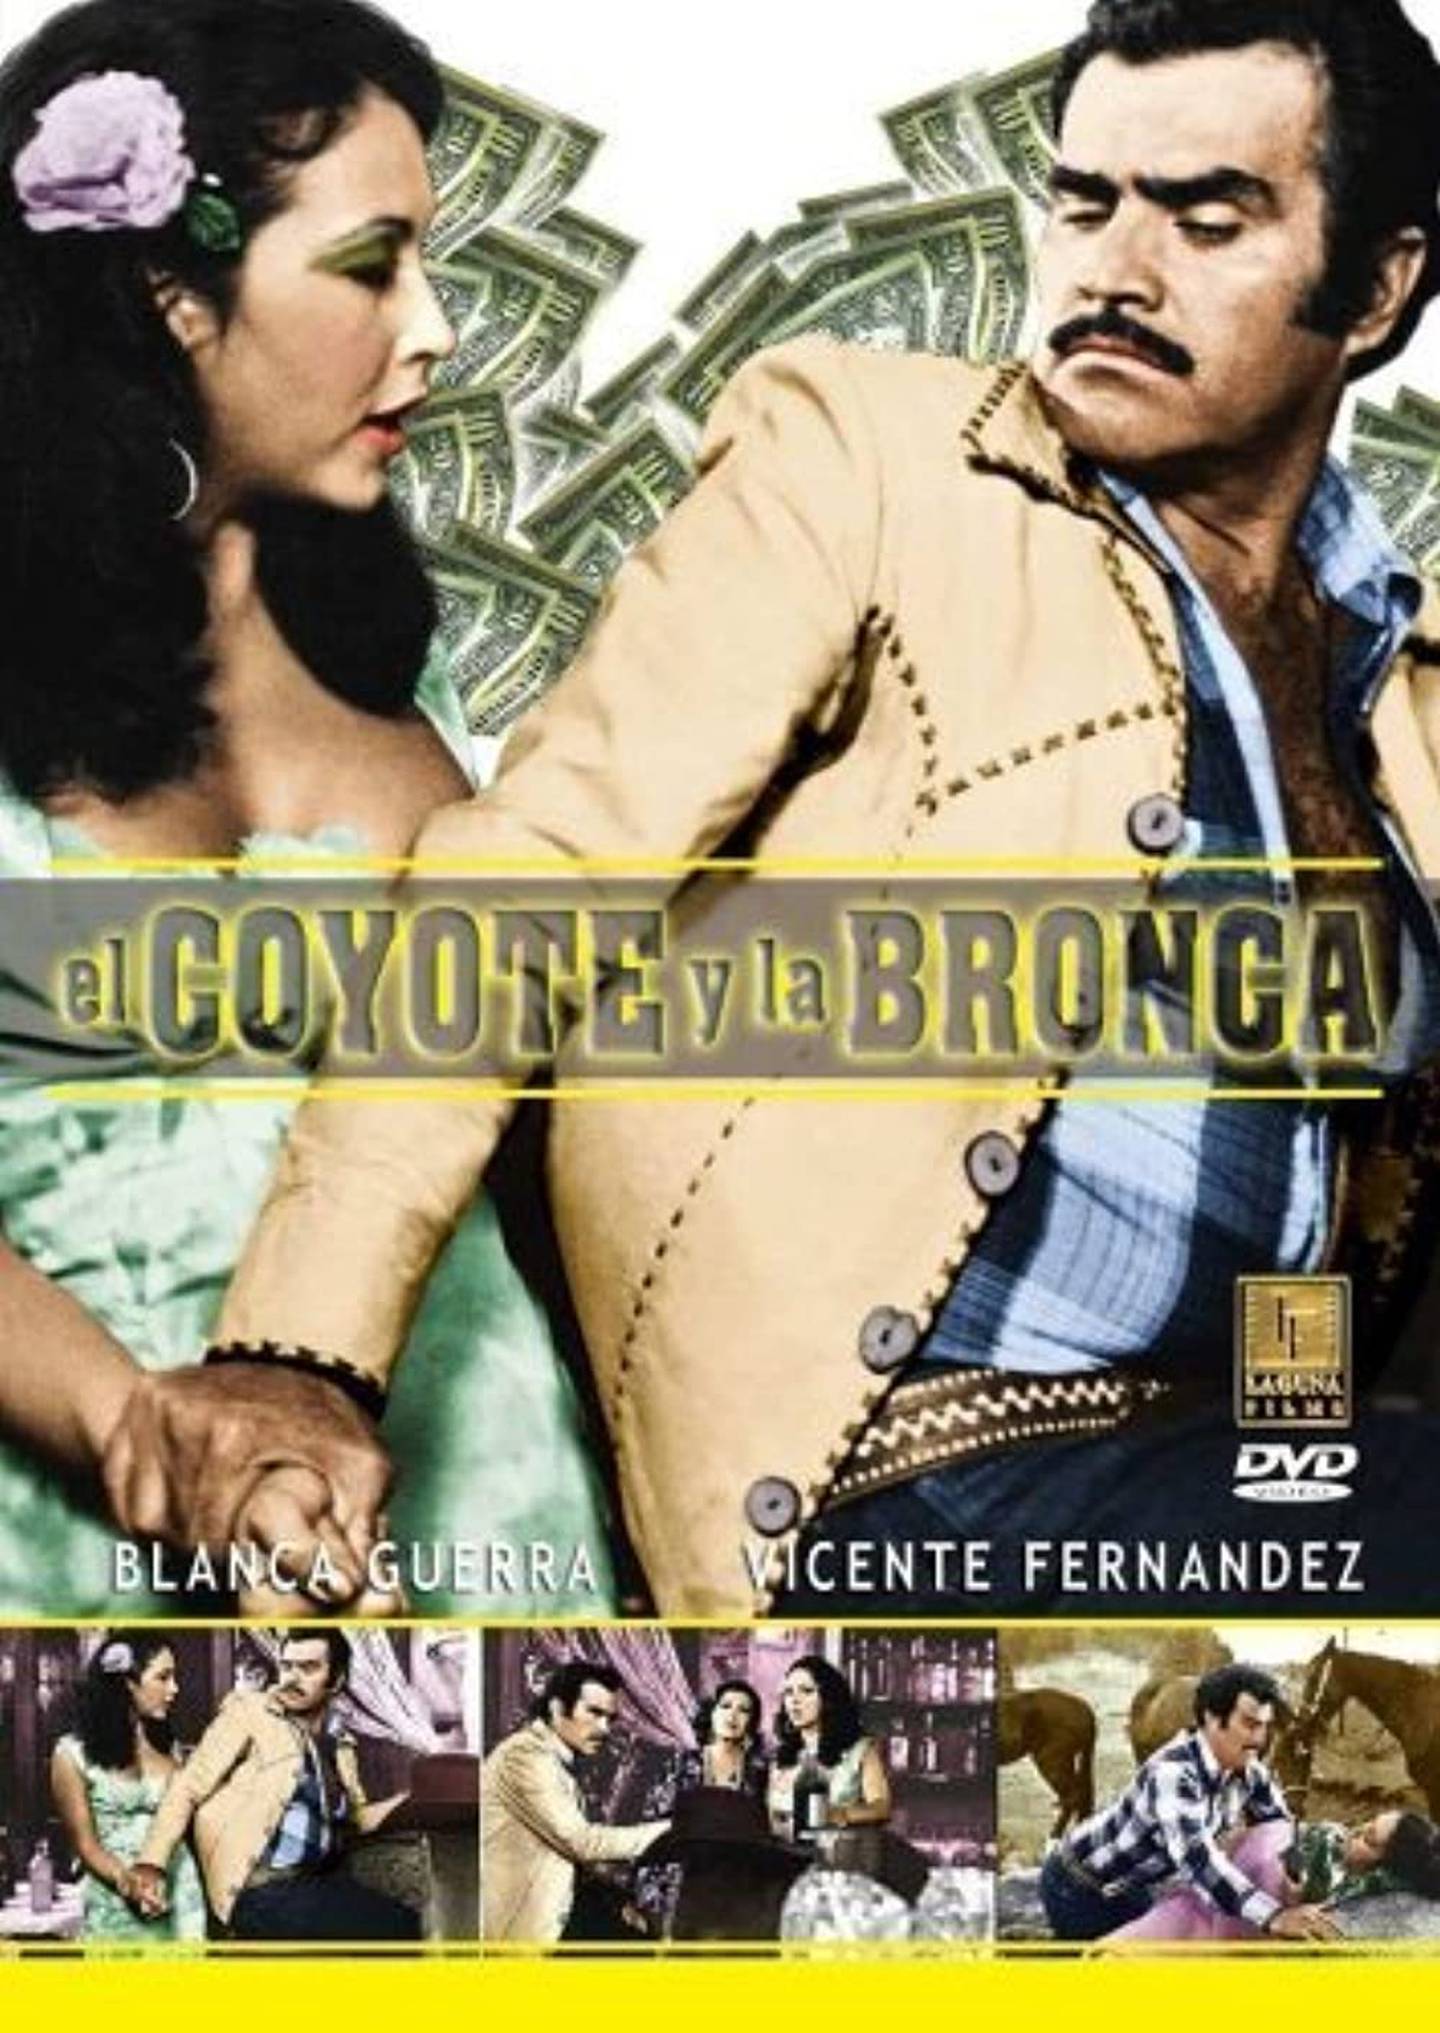 Vicente Fernández en "El Coyote y la Bronca". / 